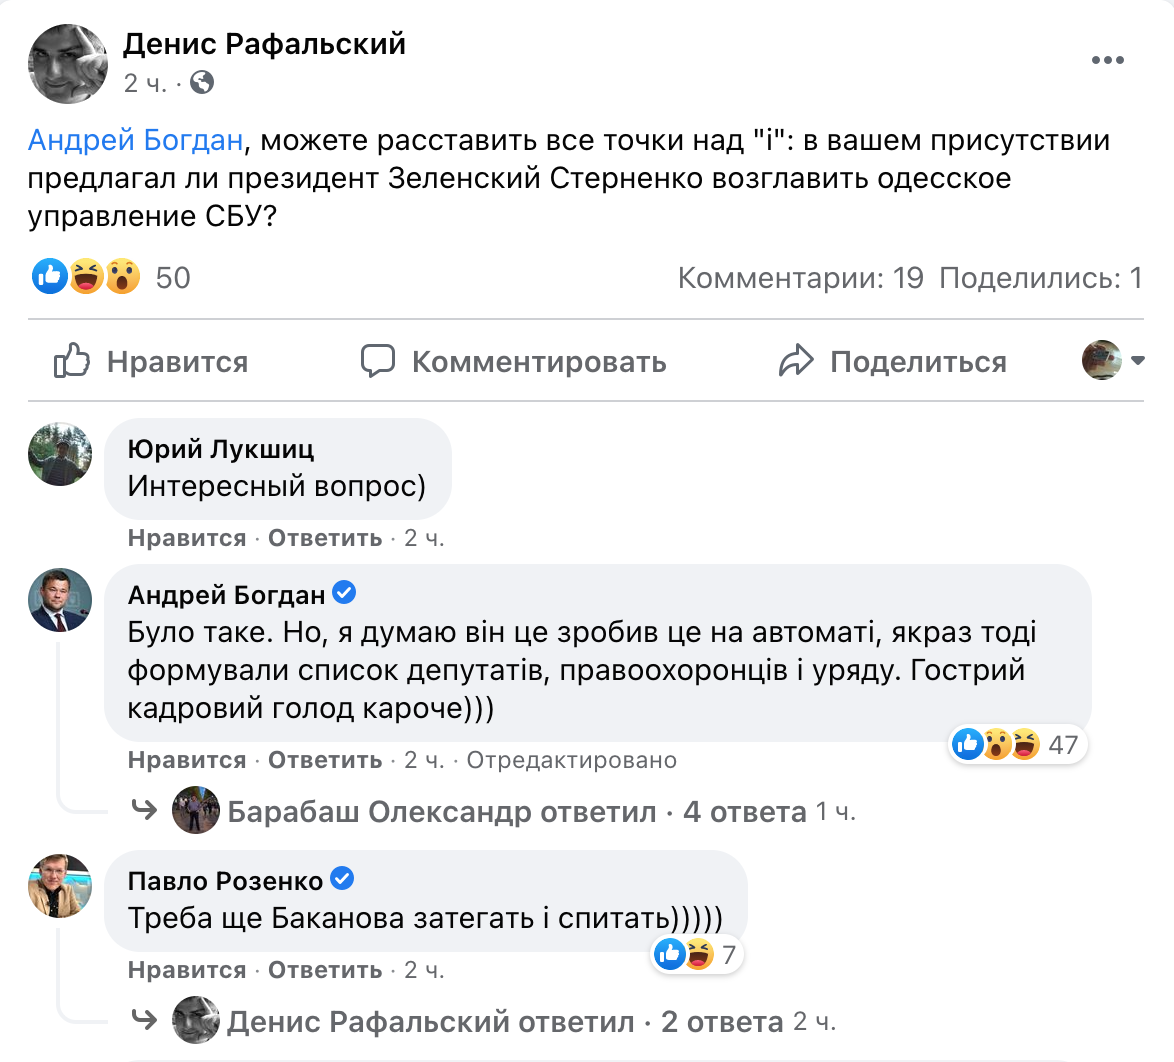 Богдан подтвердил, что Зеленский предлагал Стерненко возглавить одесское управление СБУ